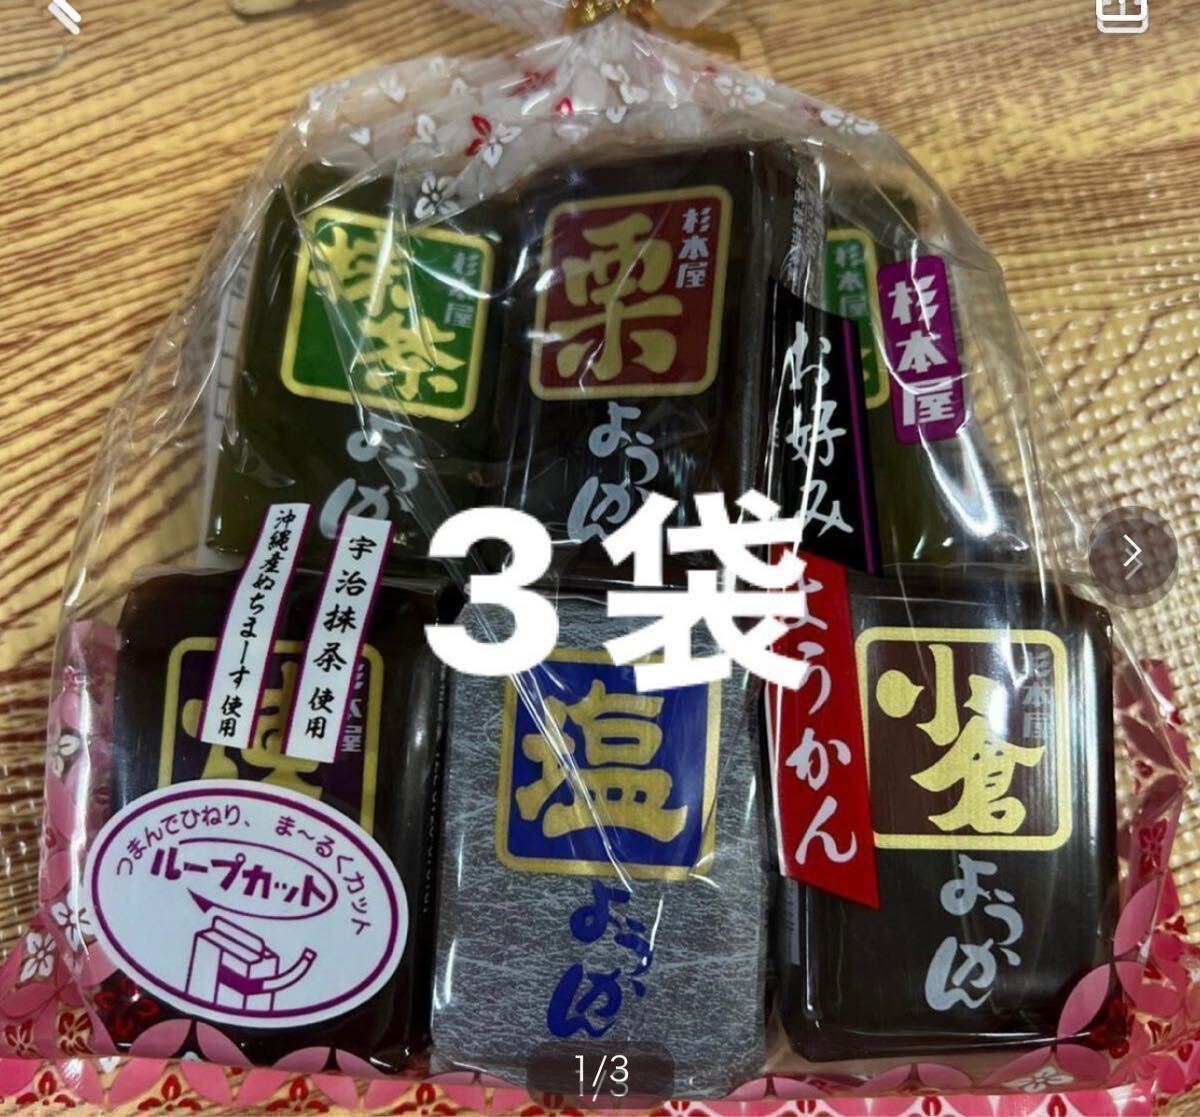  японские сладости Сугимото магазин. окономи бобовая пастила 3 пакет 